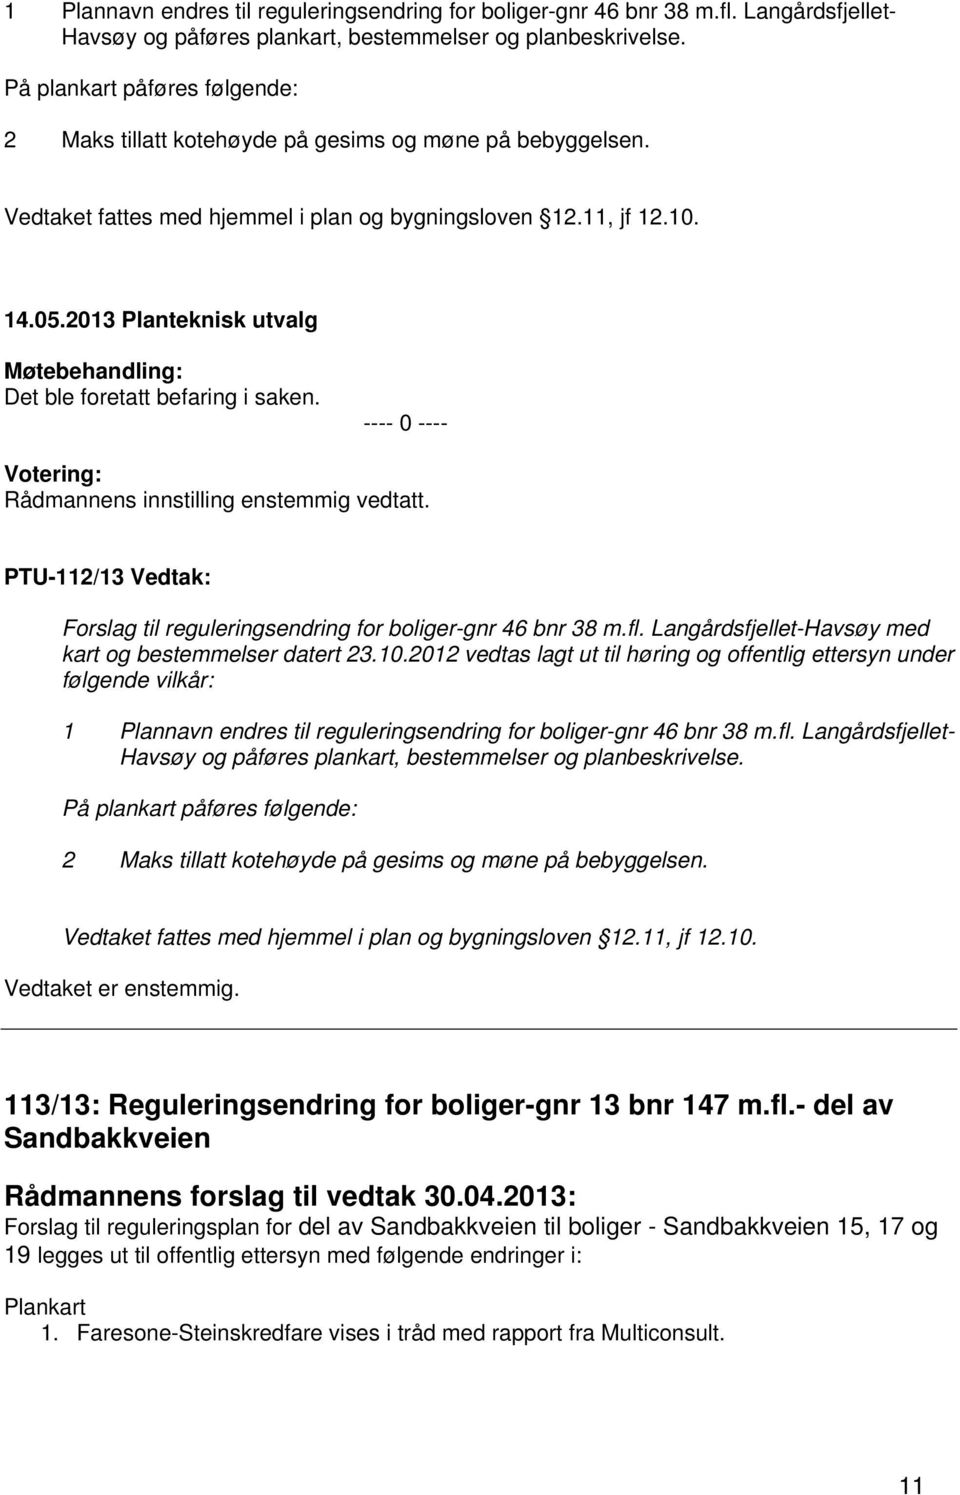 ---- 0 ---- Rådmannens innstilling enstemmig vedtatt. PTU-112/13 Vedtak: Forslag til reguleringsendring for boliger-gnr 46 bnr 38 m.fl. Langårdsfjellet-Havsøy med kart og bestemmelser datert 23.10.